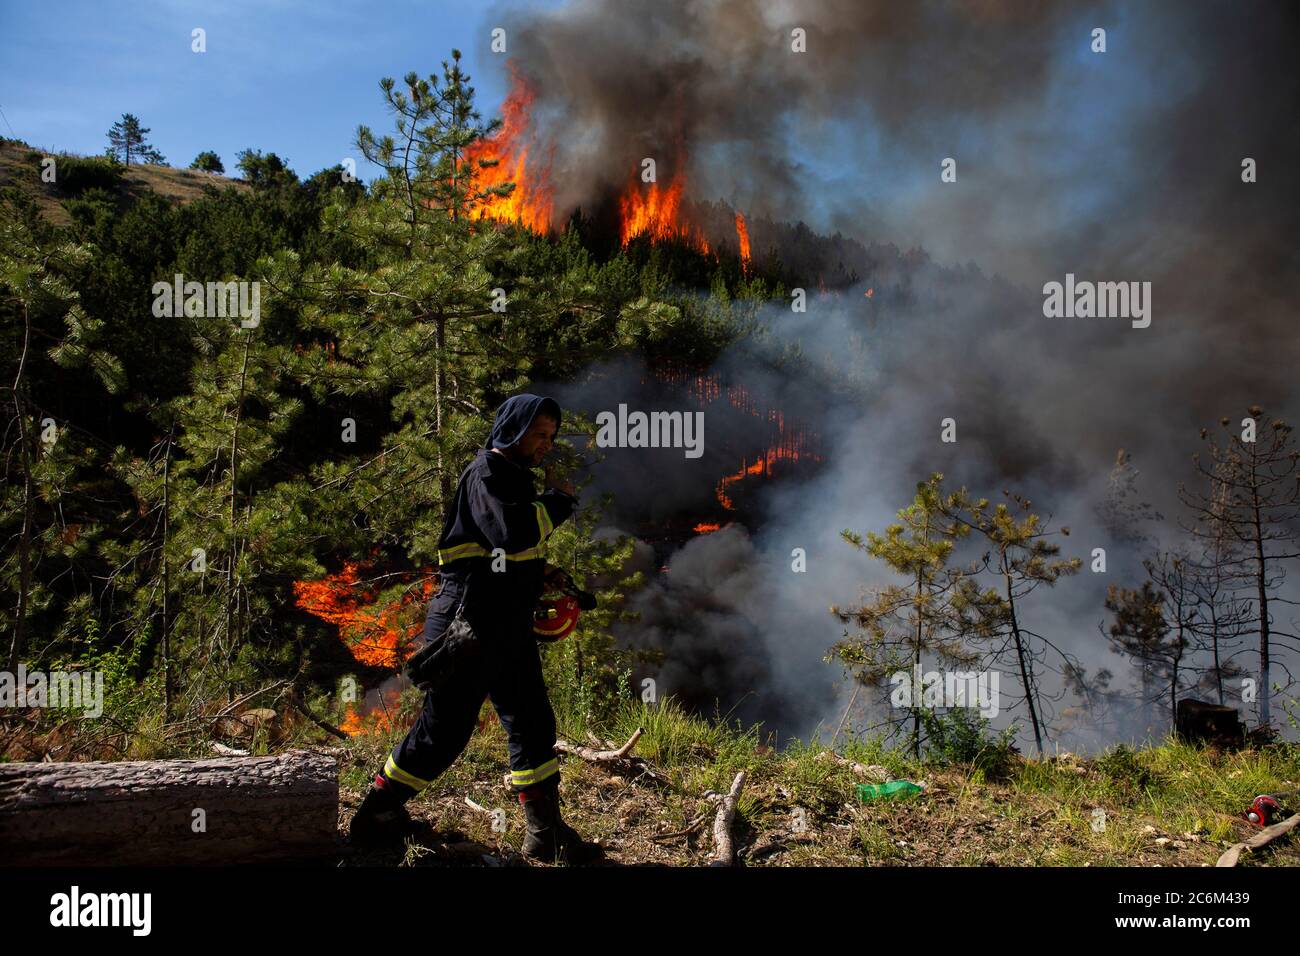 (200711) -- RAMLJANI, 11 de julio de 2020 (Xinhua) -- un bombero trabaja durante un esfuerzo para apagar un incendio forestal cerca de la aldea de Ramljani en el condado central de Lika-Senj, en Croacia, el 10 de julio de 2020. El incendio comenzó en la región montañosa el jueves. (Frano Jerkan/Pixsell via Xinhua) Foto de stock